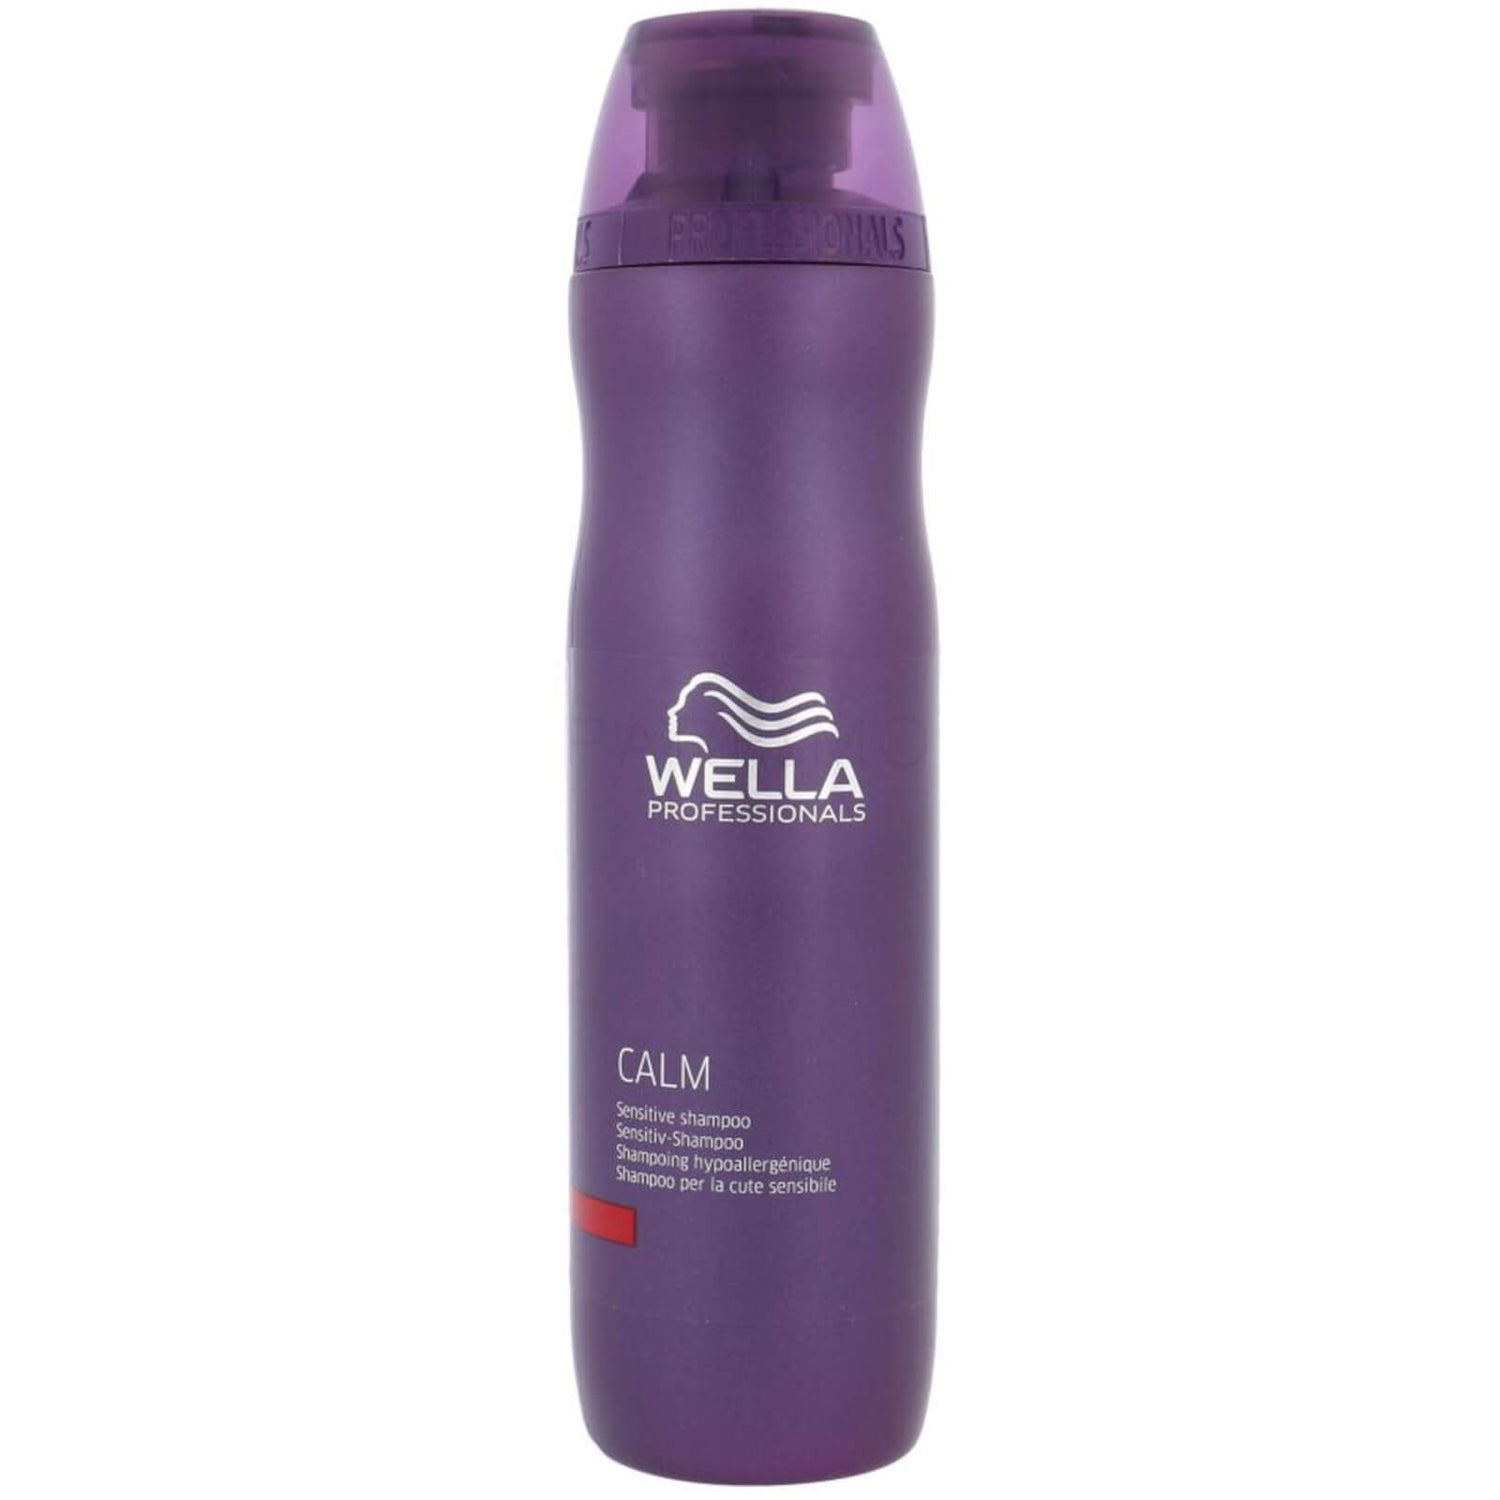 Wella Professionals Calm Sensitive Shampoo (250 ml)